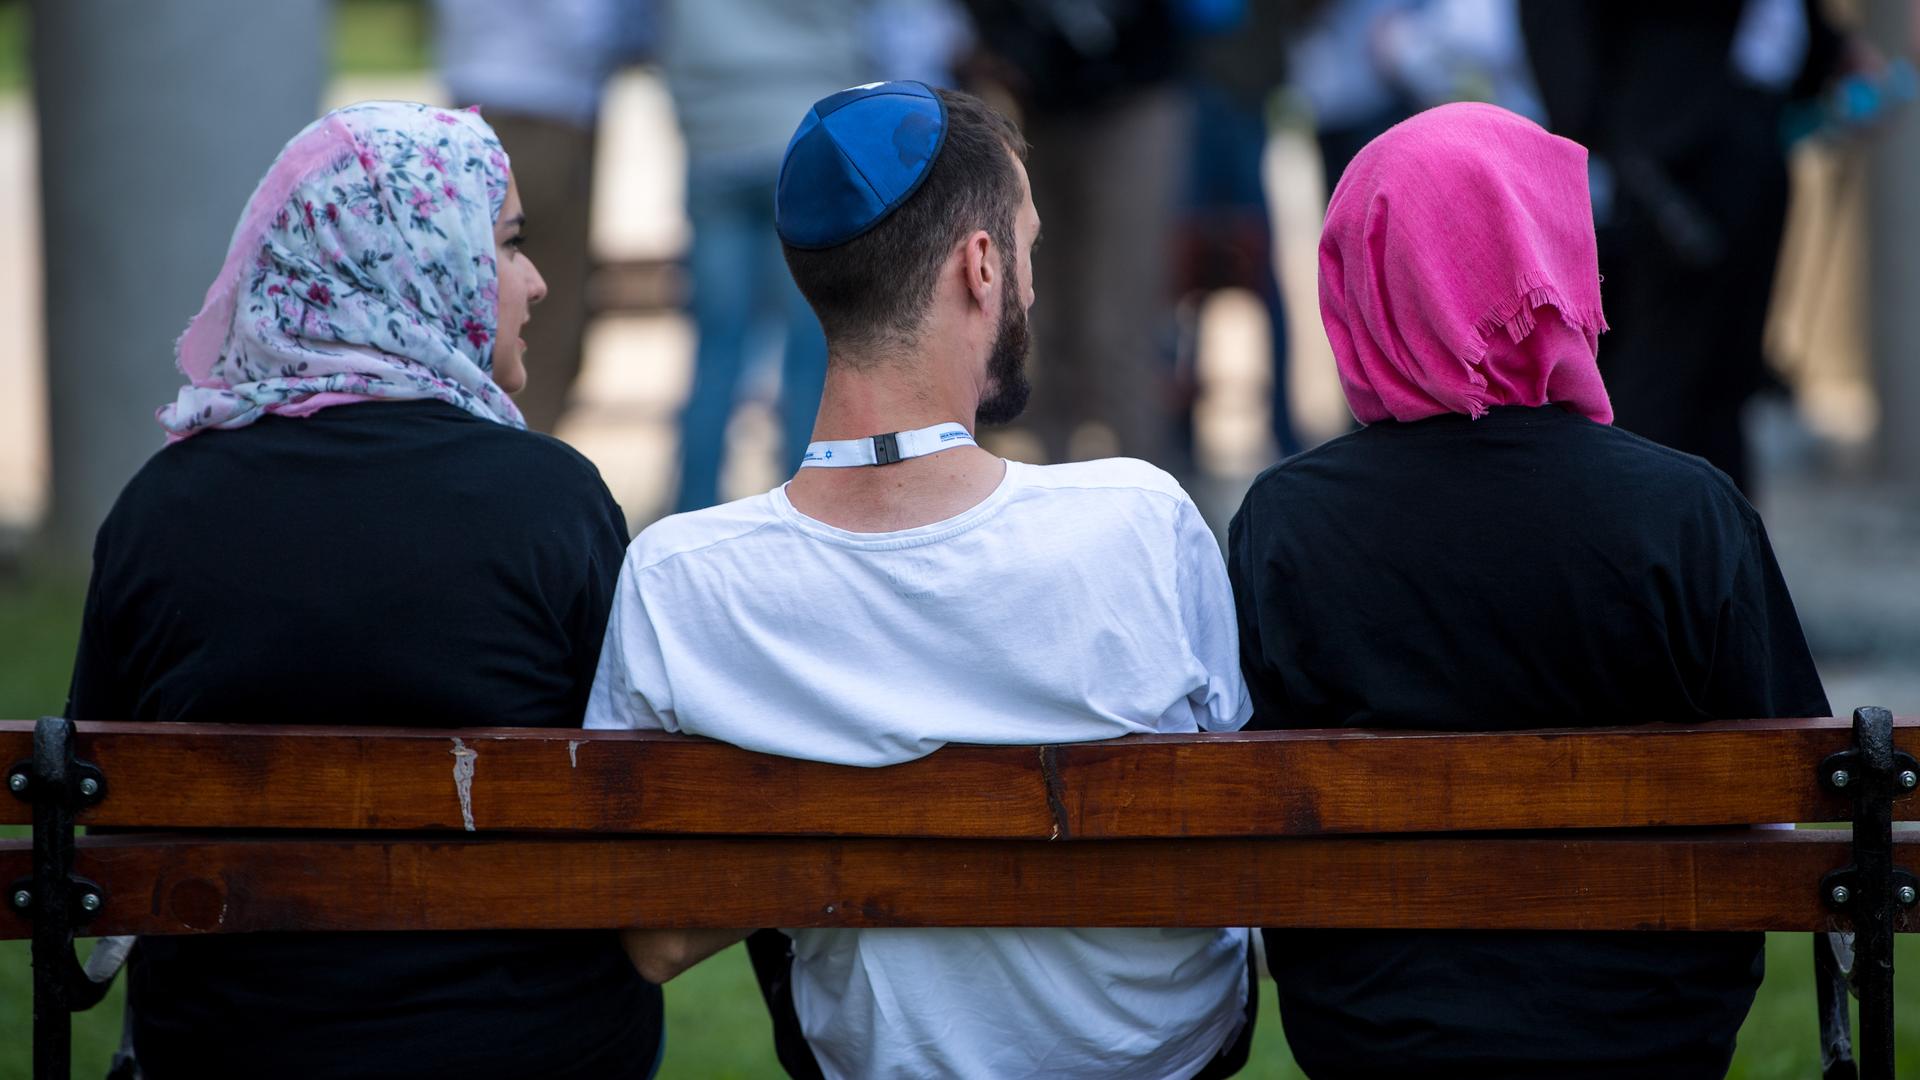 Ein jüdischer Mann mit Kippa sitzt zwischen zwei muslimischen Frauen auf einer Bank. Beide Frauen tragen Kopftuch.